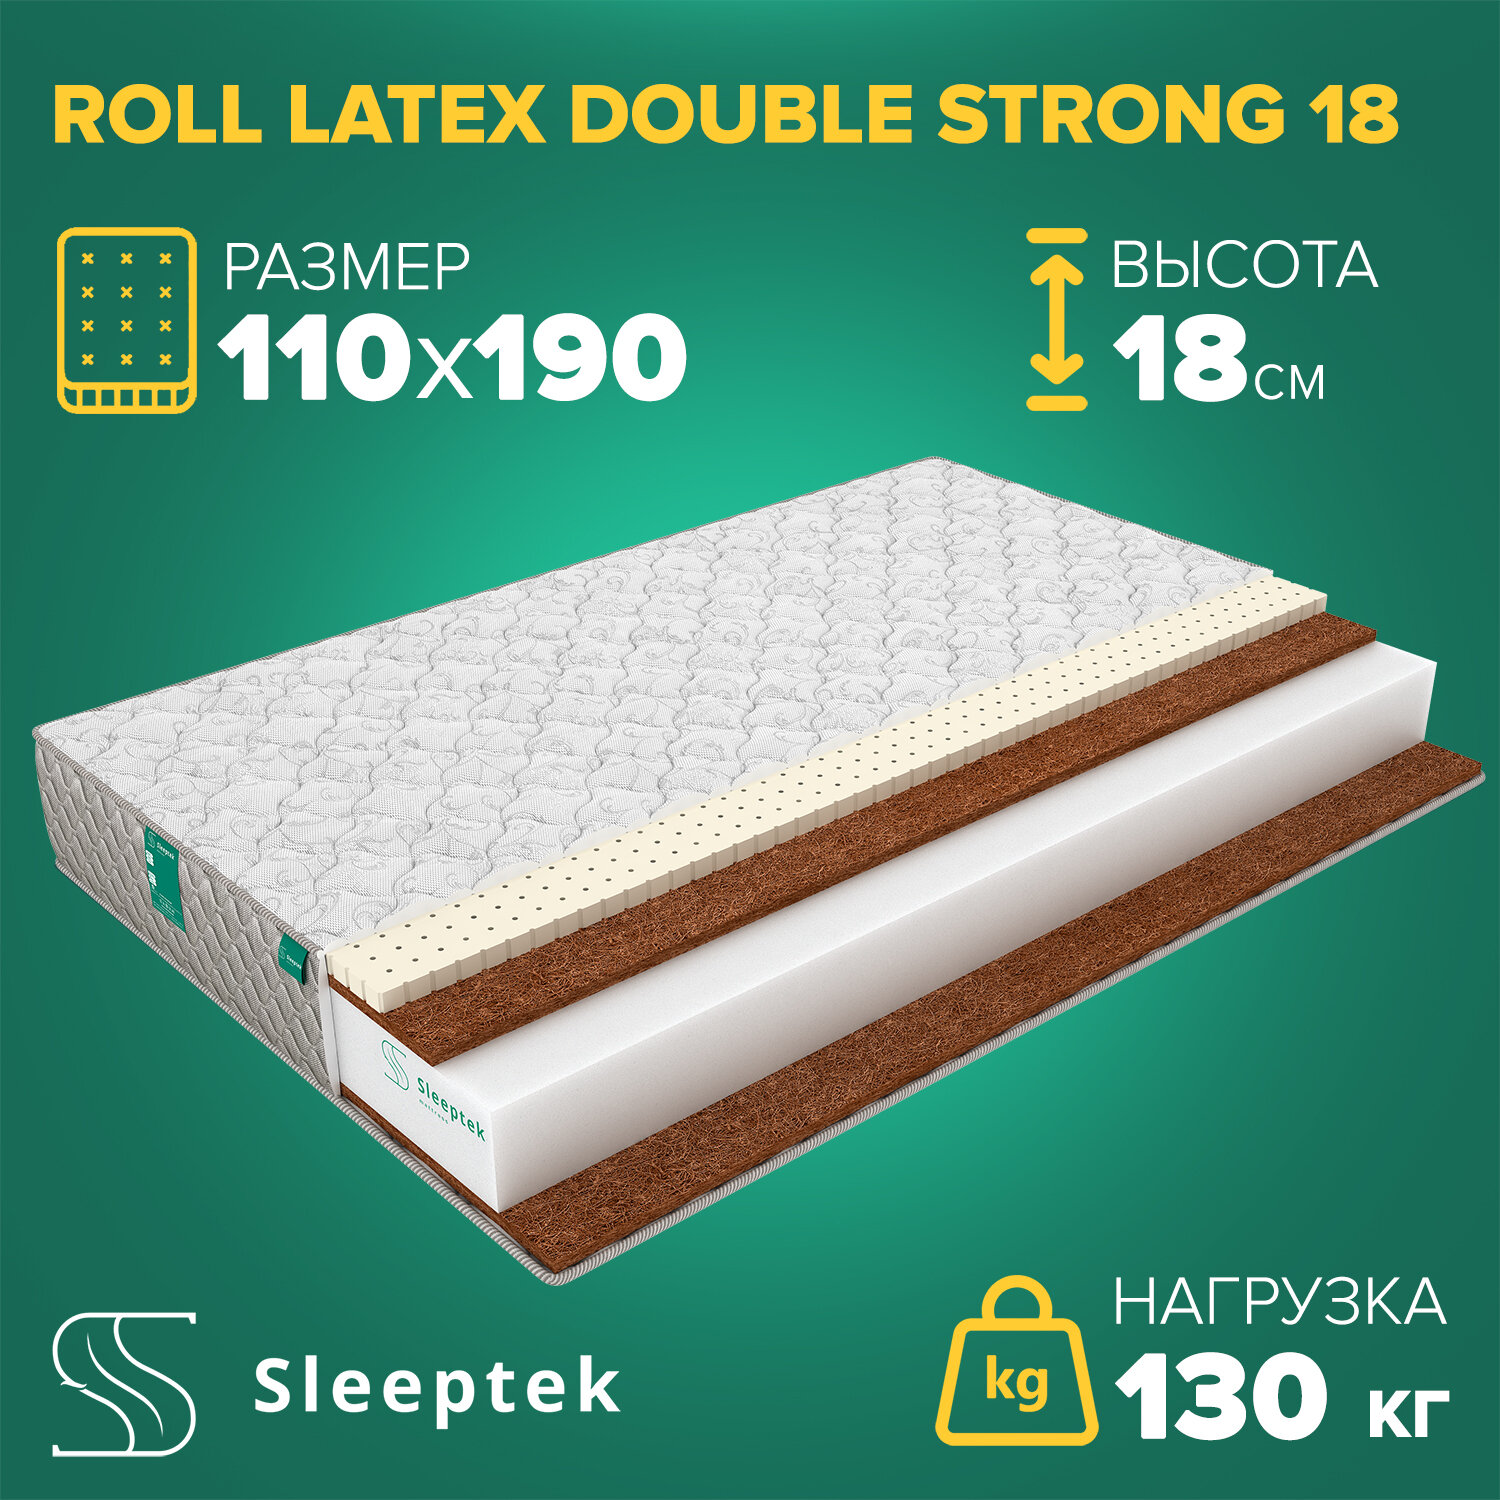 Матрас Sleeptek Roll Latex DoubleStrong 18 110х190